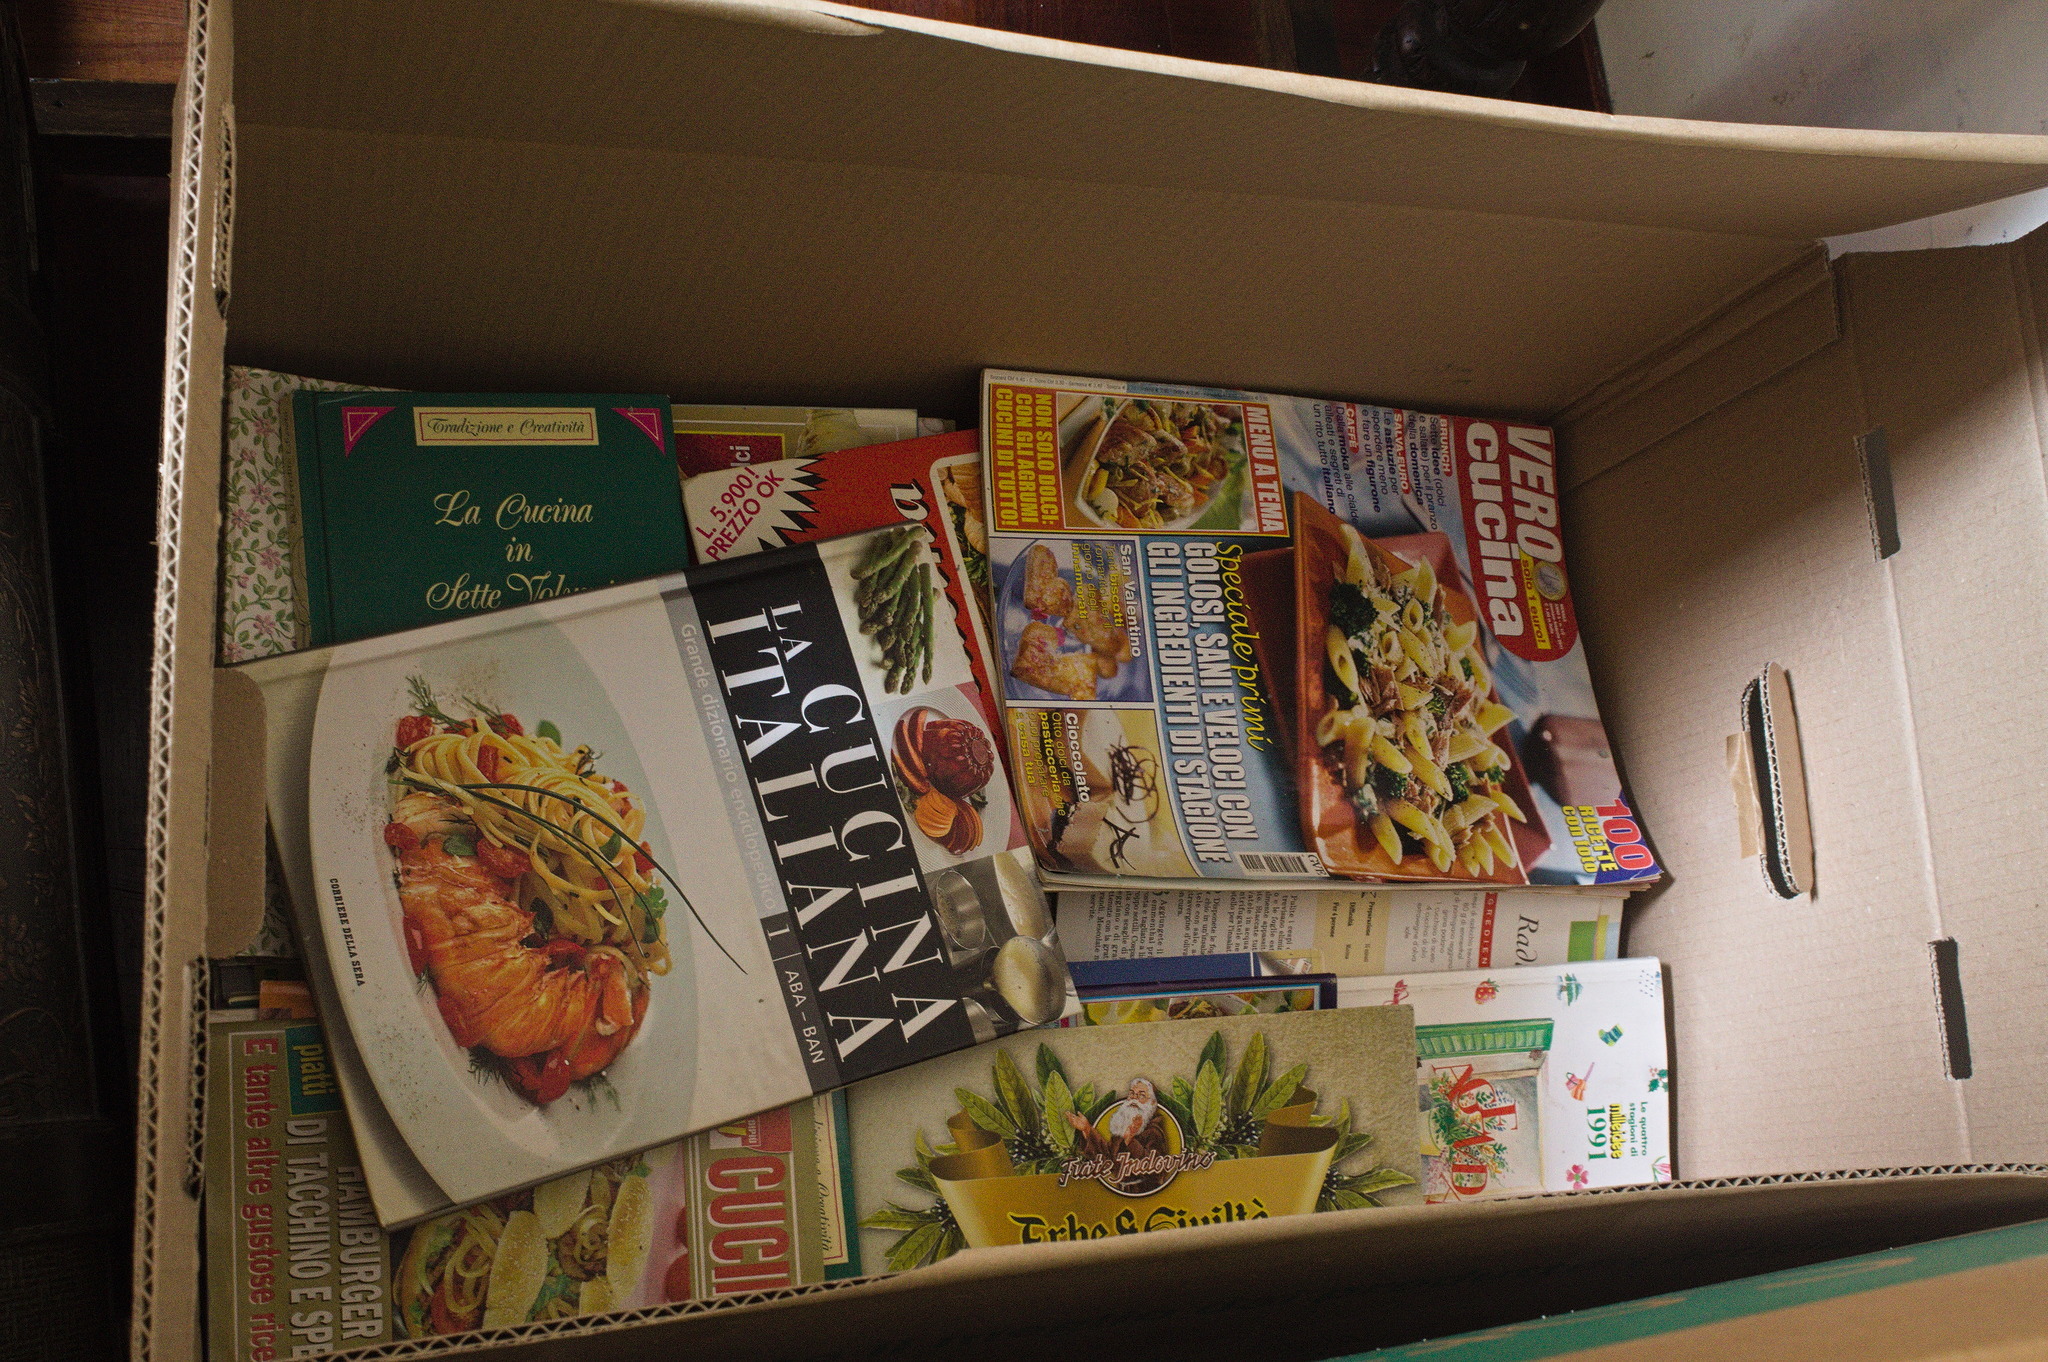 uno scatolone circa 60 cm × 40 cm × 25 cm contenente libri e riviste